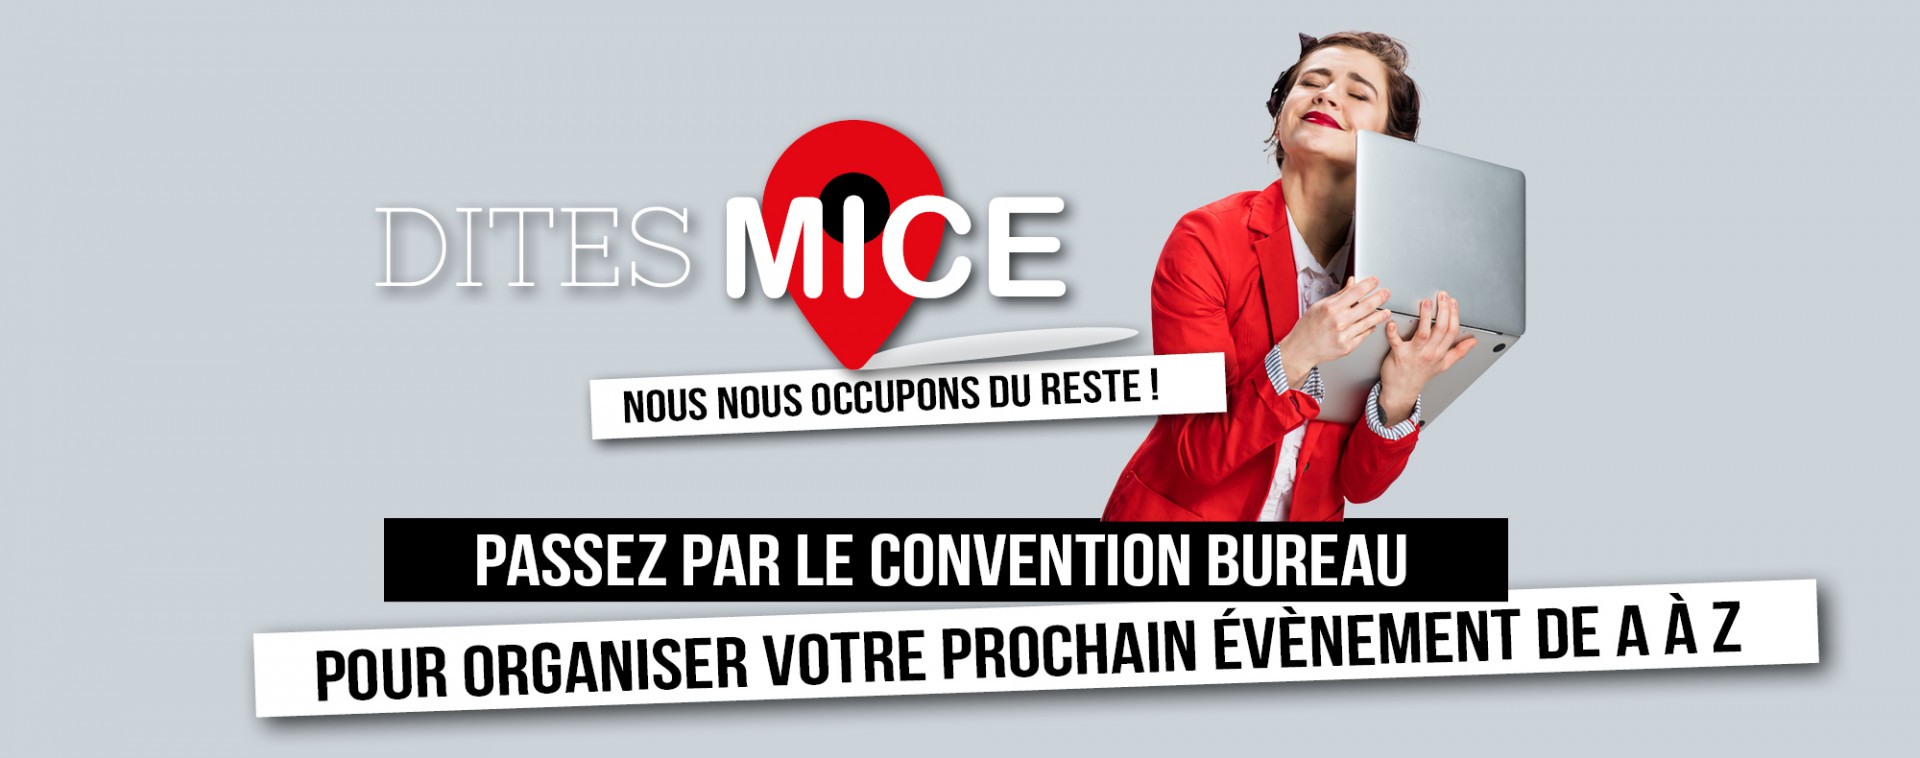 Dites MICE - Votre évènement de A à Z - Liège-Spa Businessland | © Getty Images